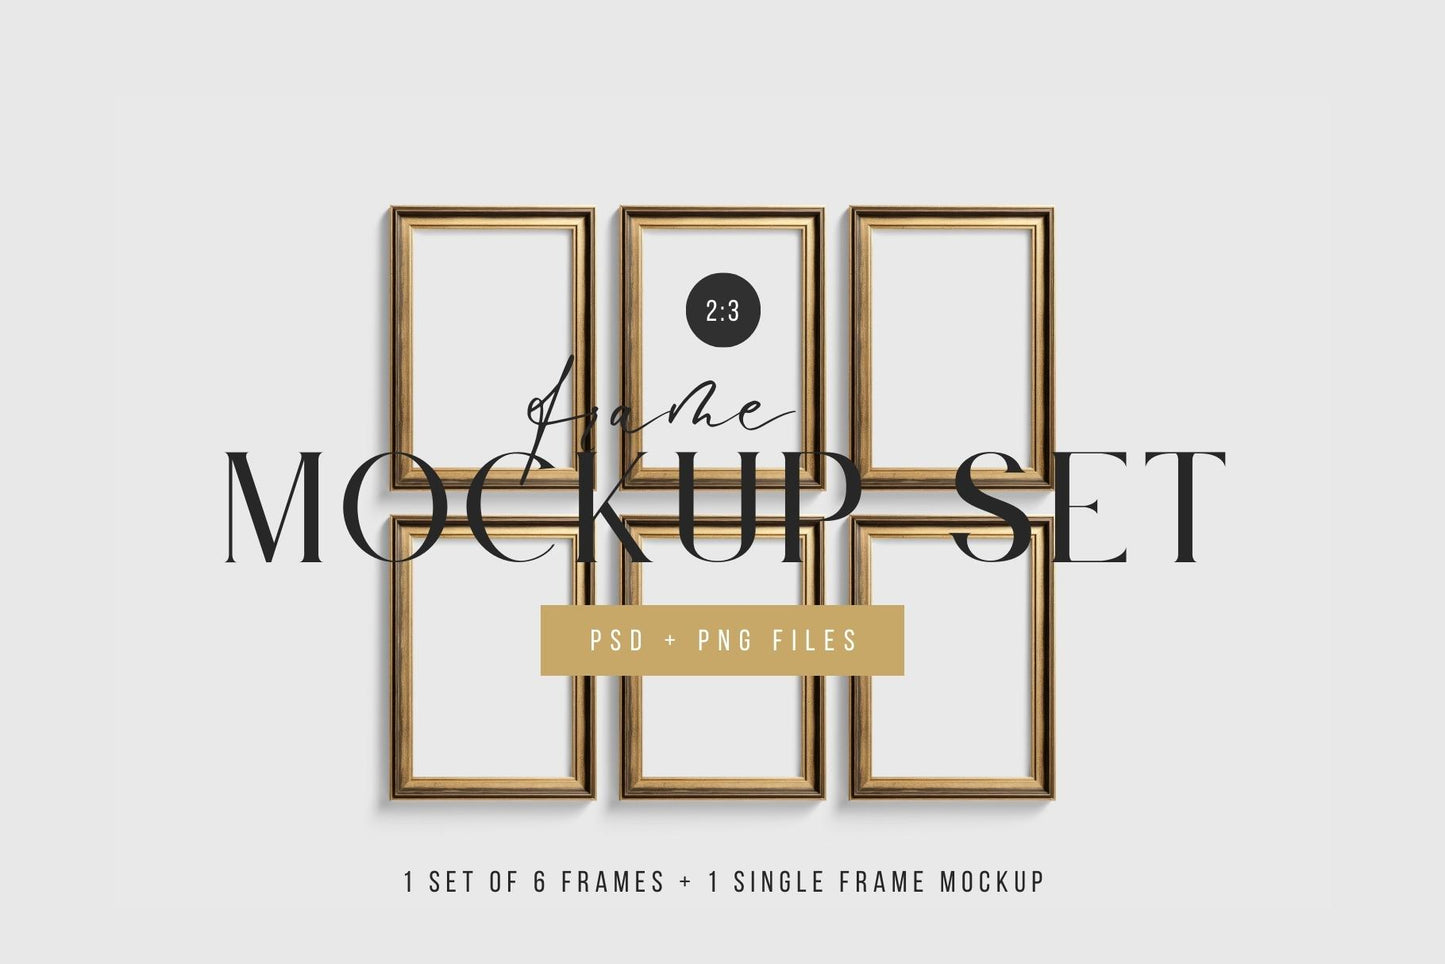 Metallic Frame Mockup Set of 6 Vertical Frames 2:3 | Vintage Gold Frame Mockup Set | PSD Template + Transparent PNG Files